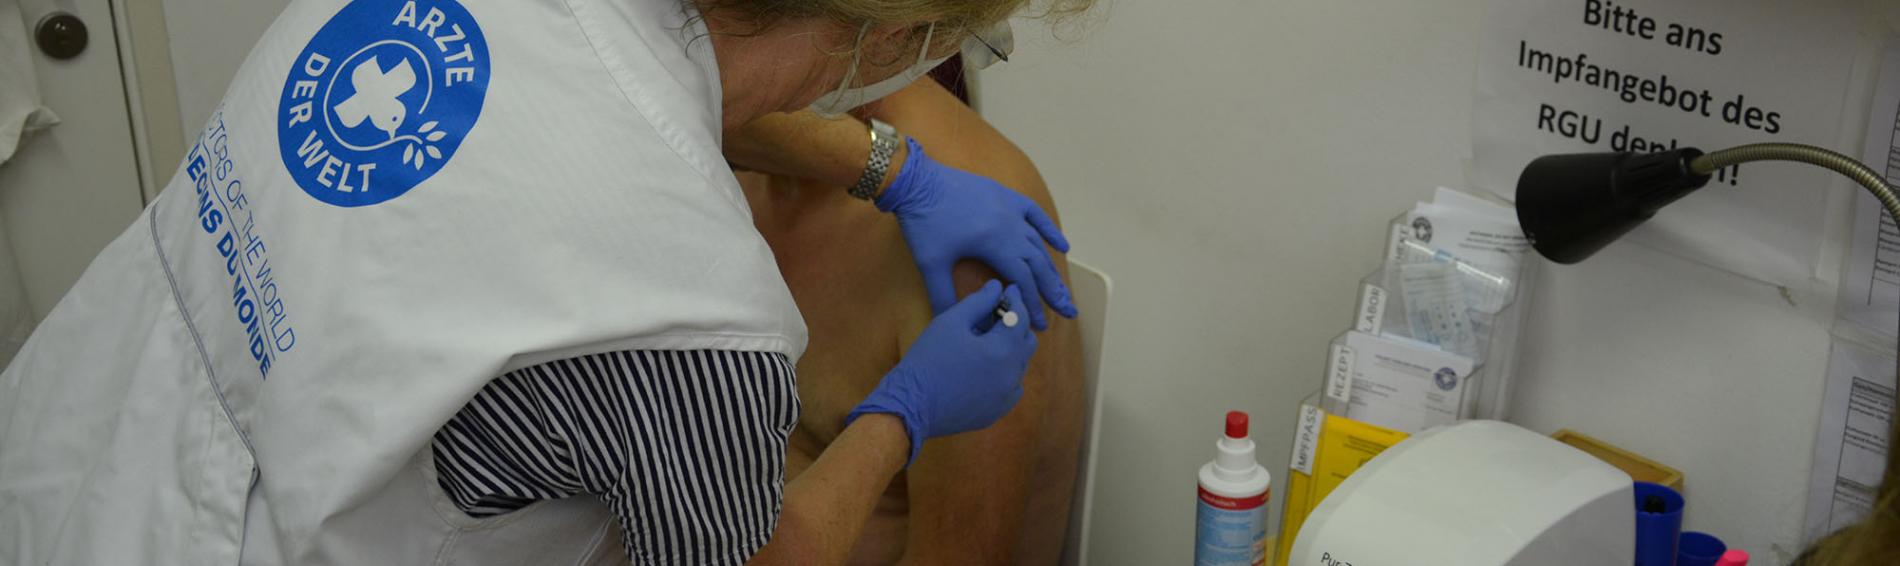 Impfsprechstunde in der medizinischen Anlaufstelle. Foto: Ärzte der Welt